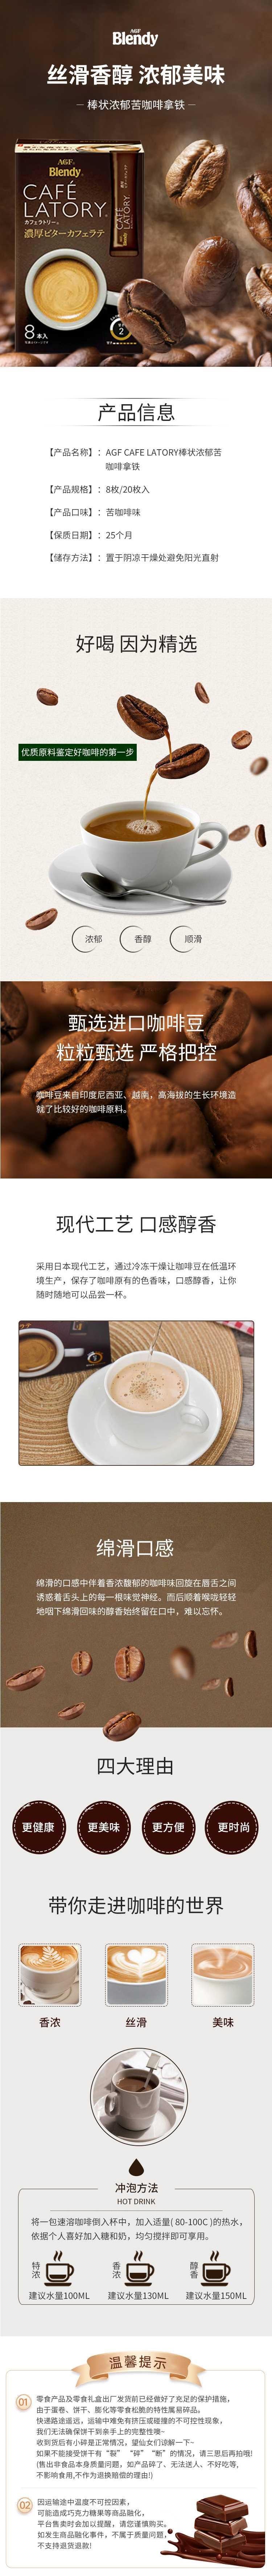 【日本直邮】AGF CAFE LATORY 醇厚微苦拿铁咖啡 8条入